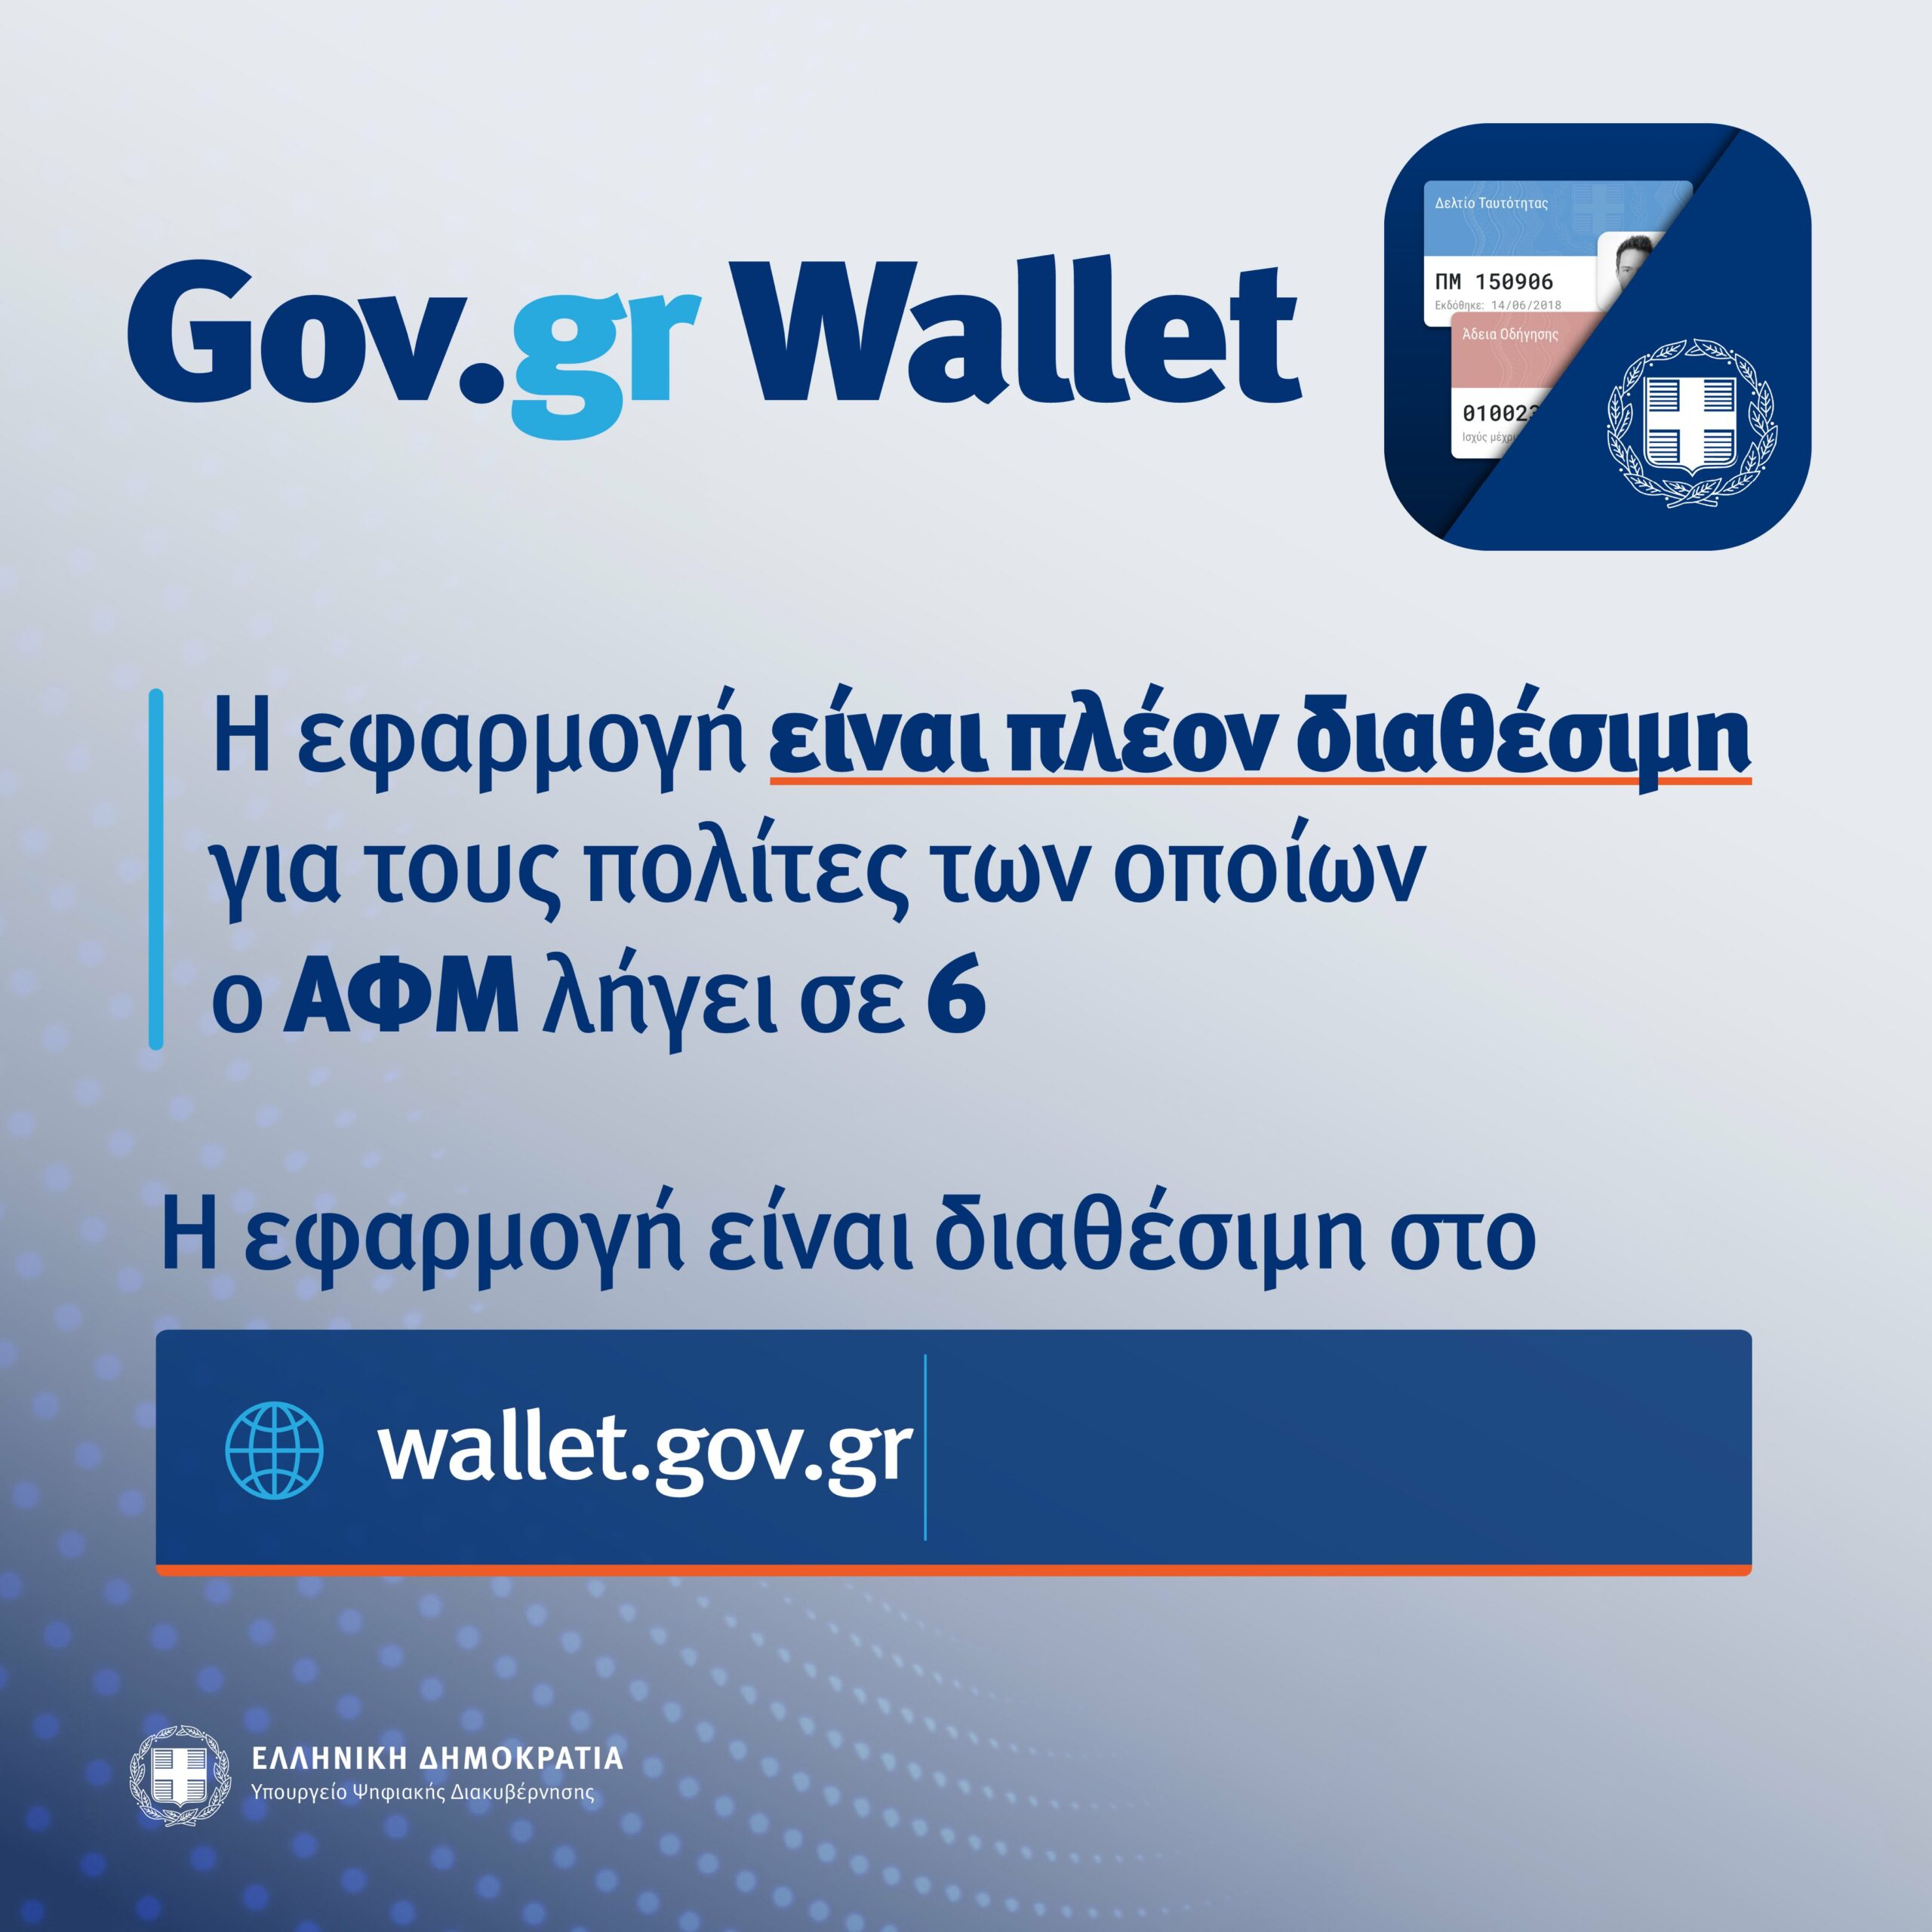 Σχεδόν 400 χιλιάδες ψηφιακά έγγραφα στο wallet.gov.gr - Άνοιξε η πλατφόρμα για τα ΑΦΜ που λήγουν σε 6